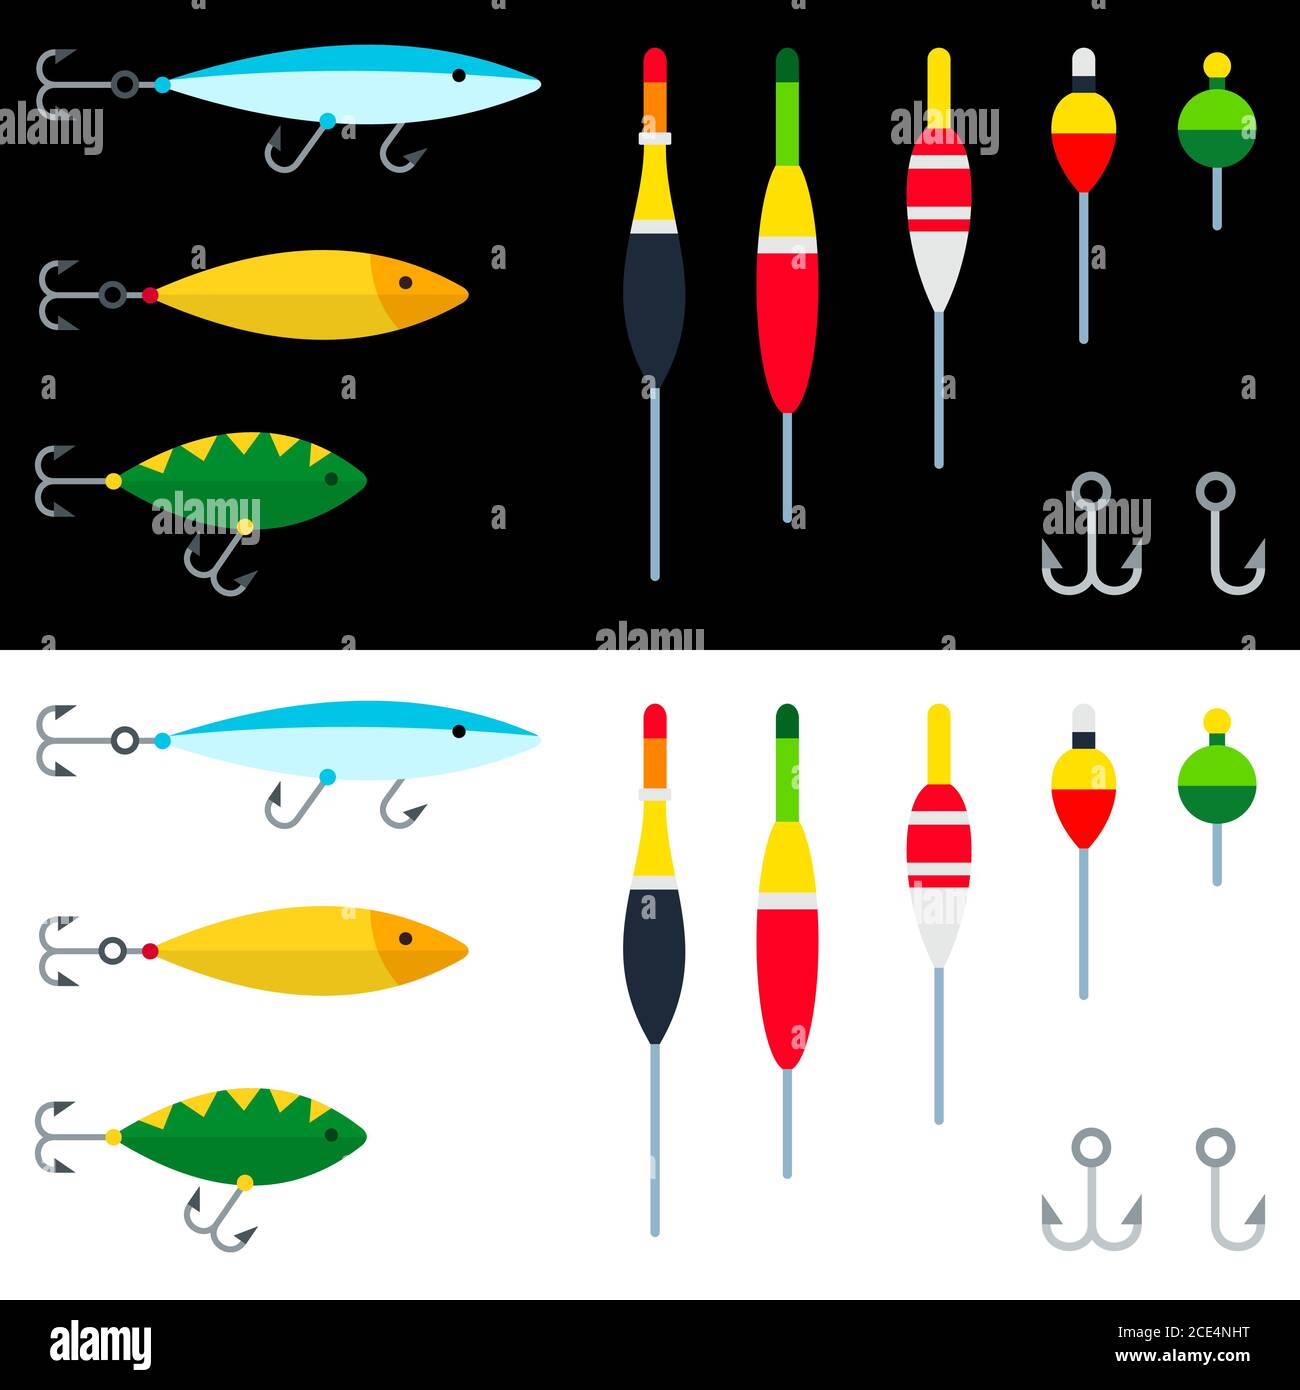 Jeu d'accessoires de pêche, crochets, boules, flotteurs illustration vectorielle dans un modèle plat. Illustration de Vecteur